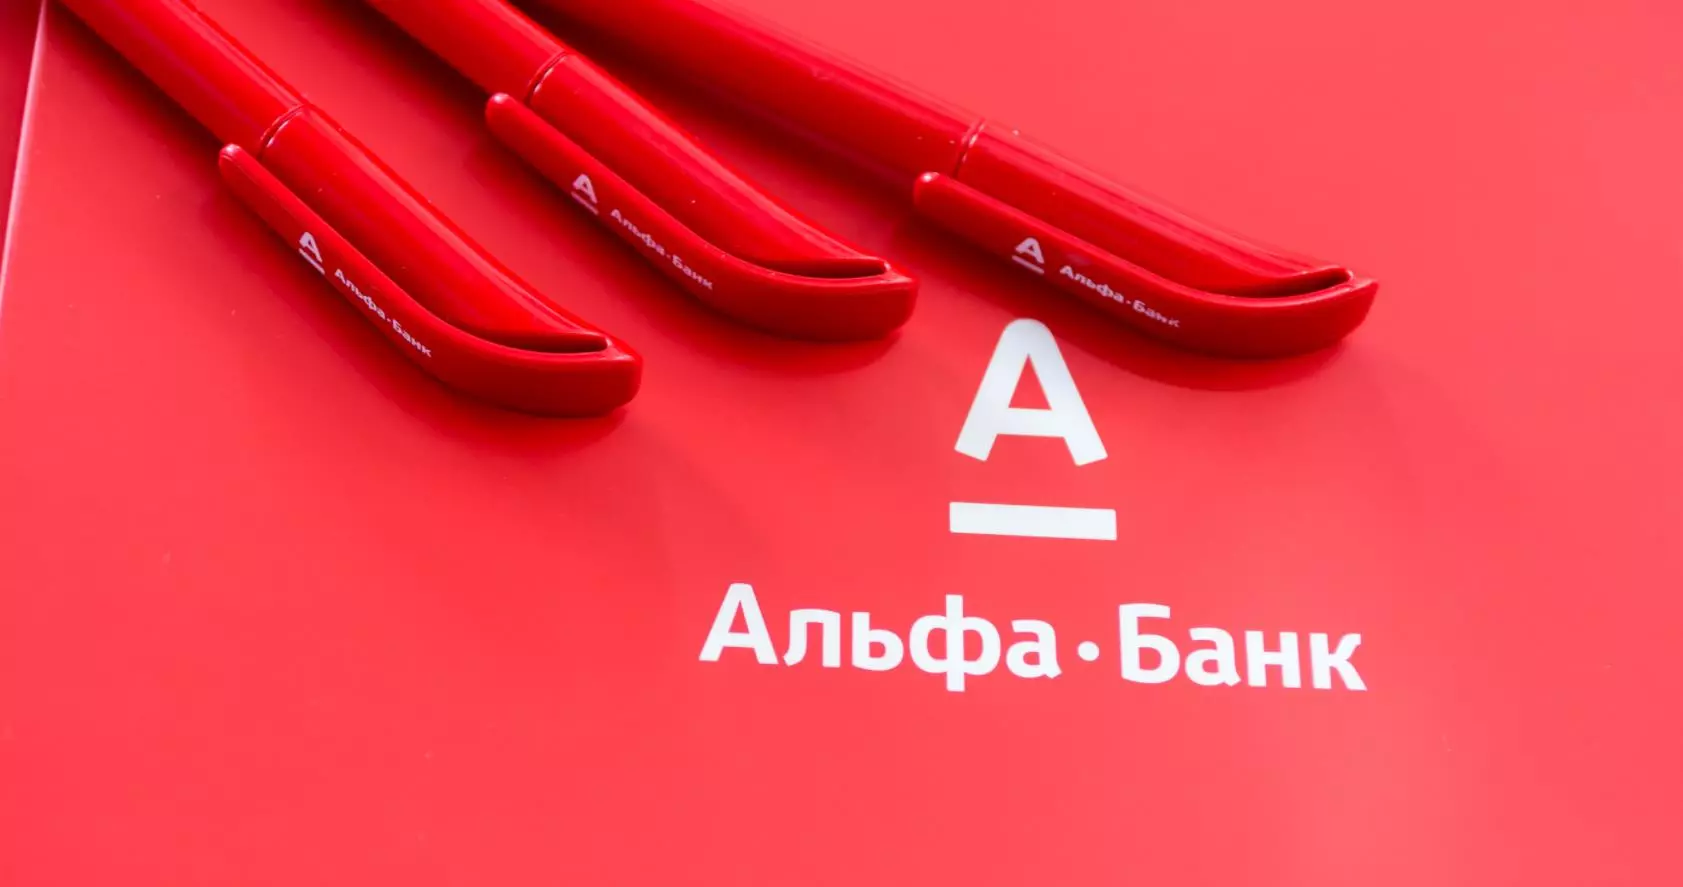 Alpha Bank paiera 1 million de roubles pour plus d'informations sur les cybercriminels et les fraudeurs 3851_1